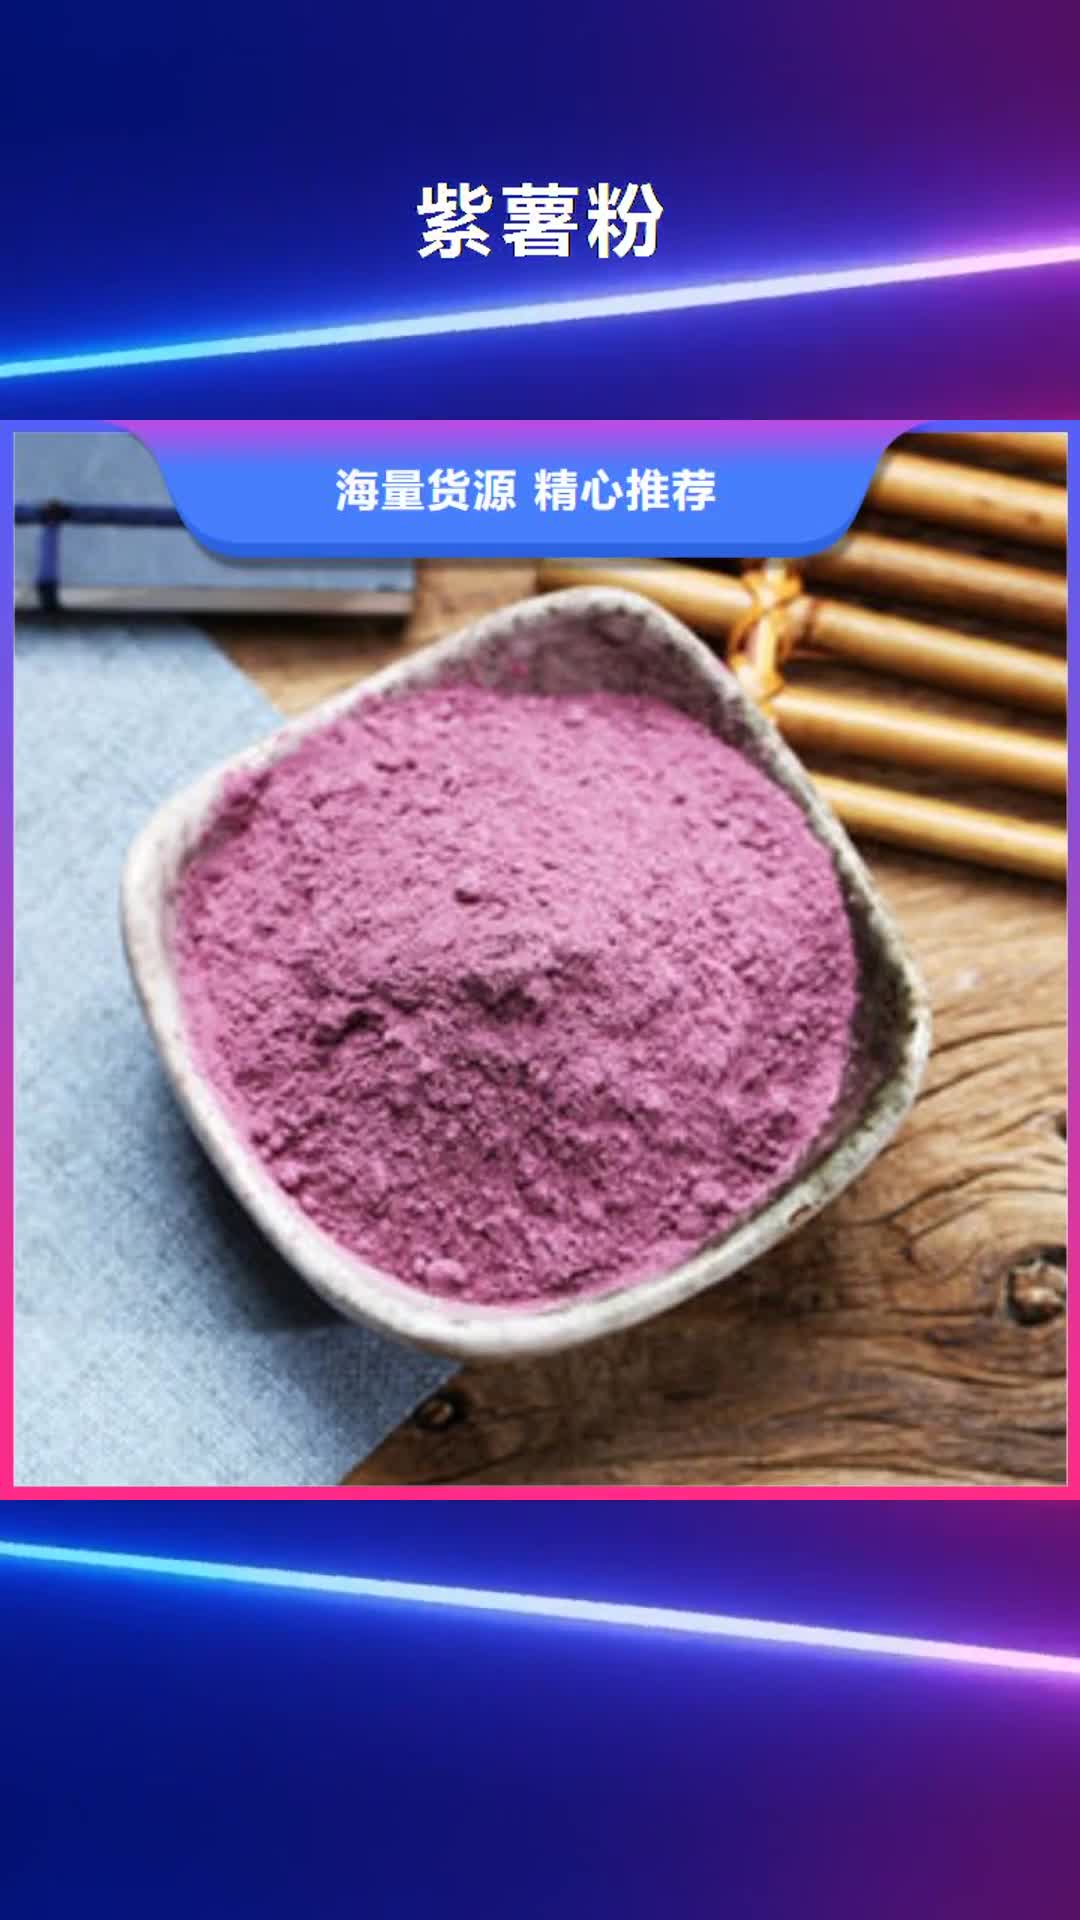 绍兴紫薯粉南瓜丁厂家用途广泛